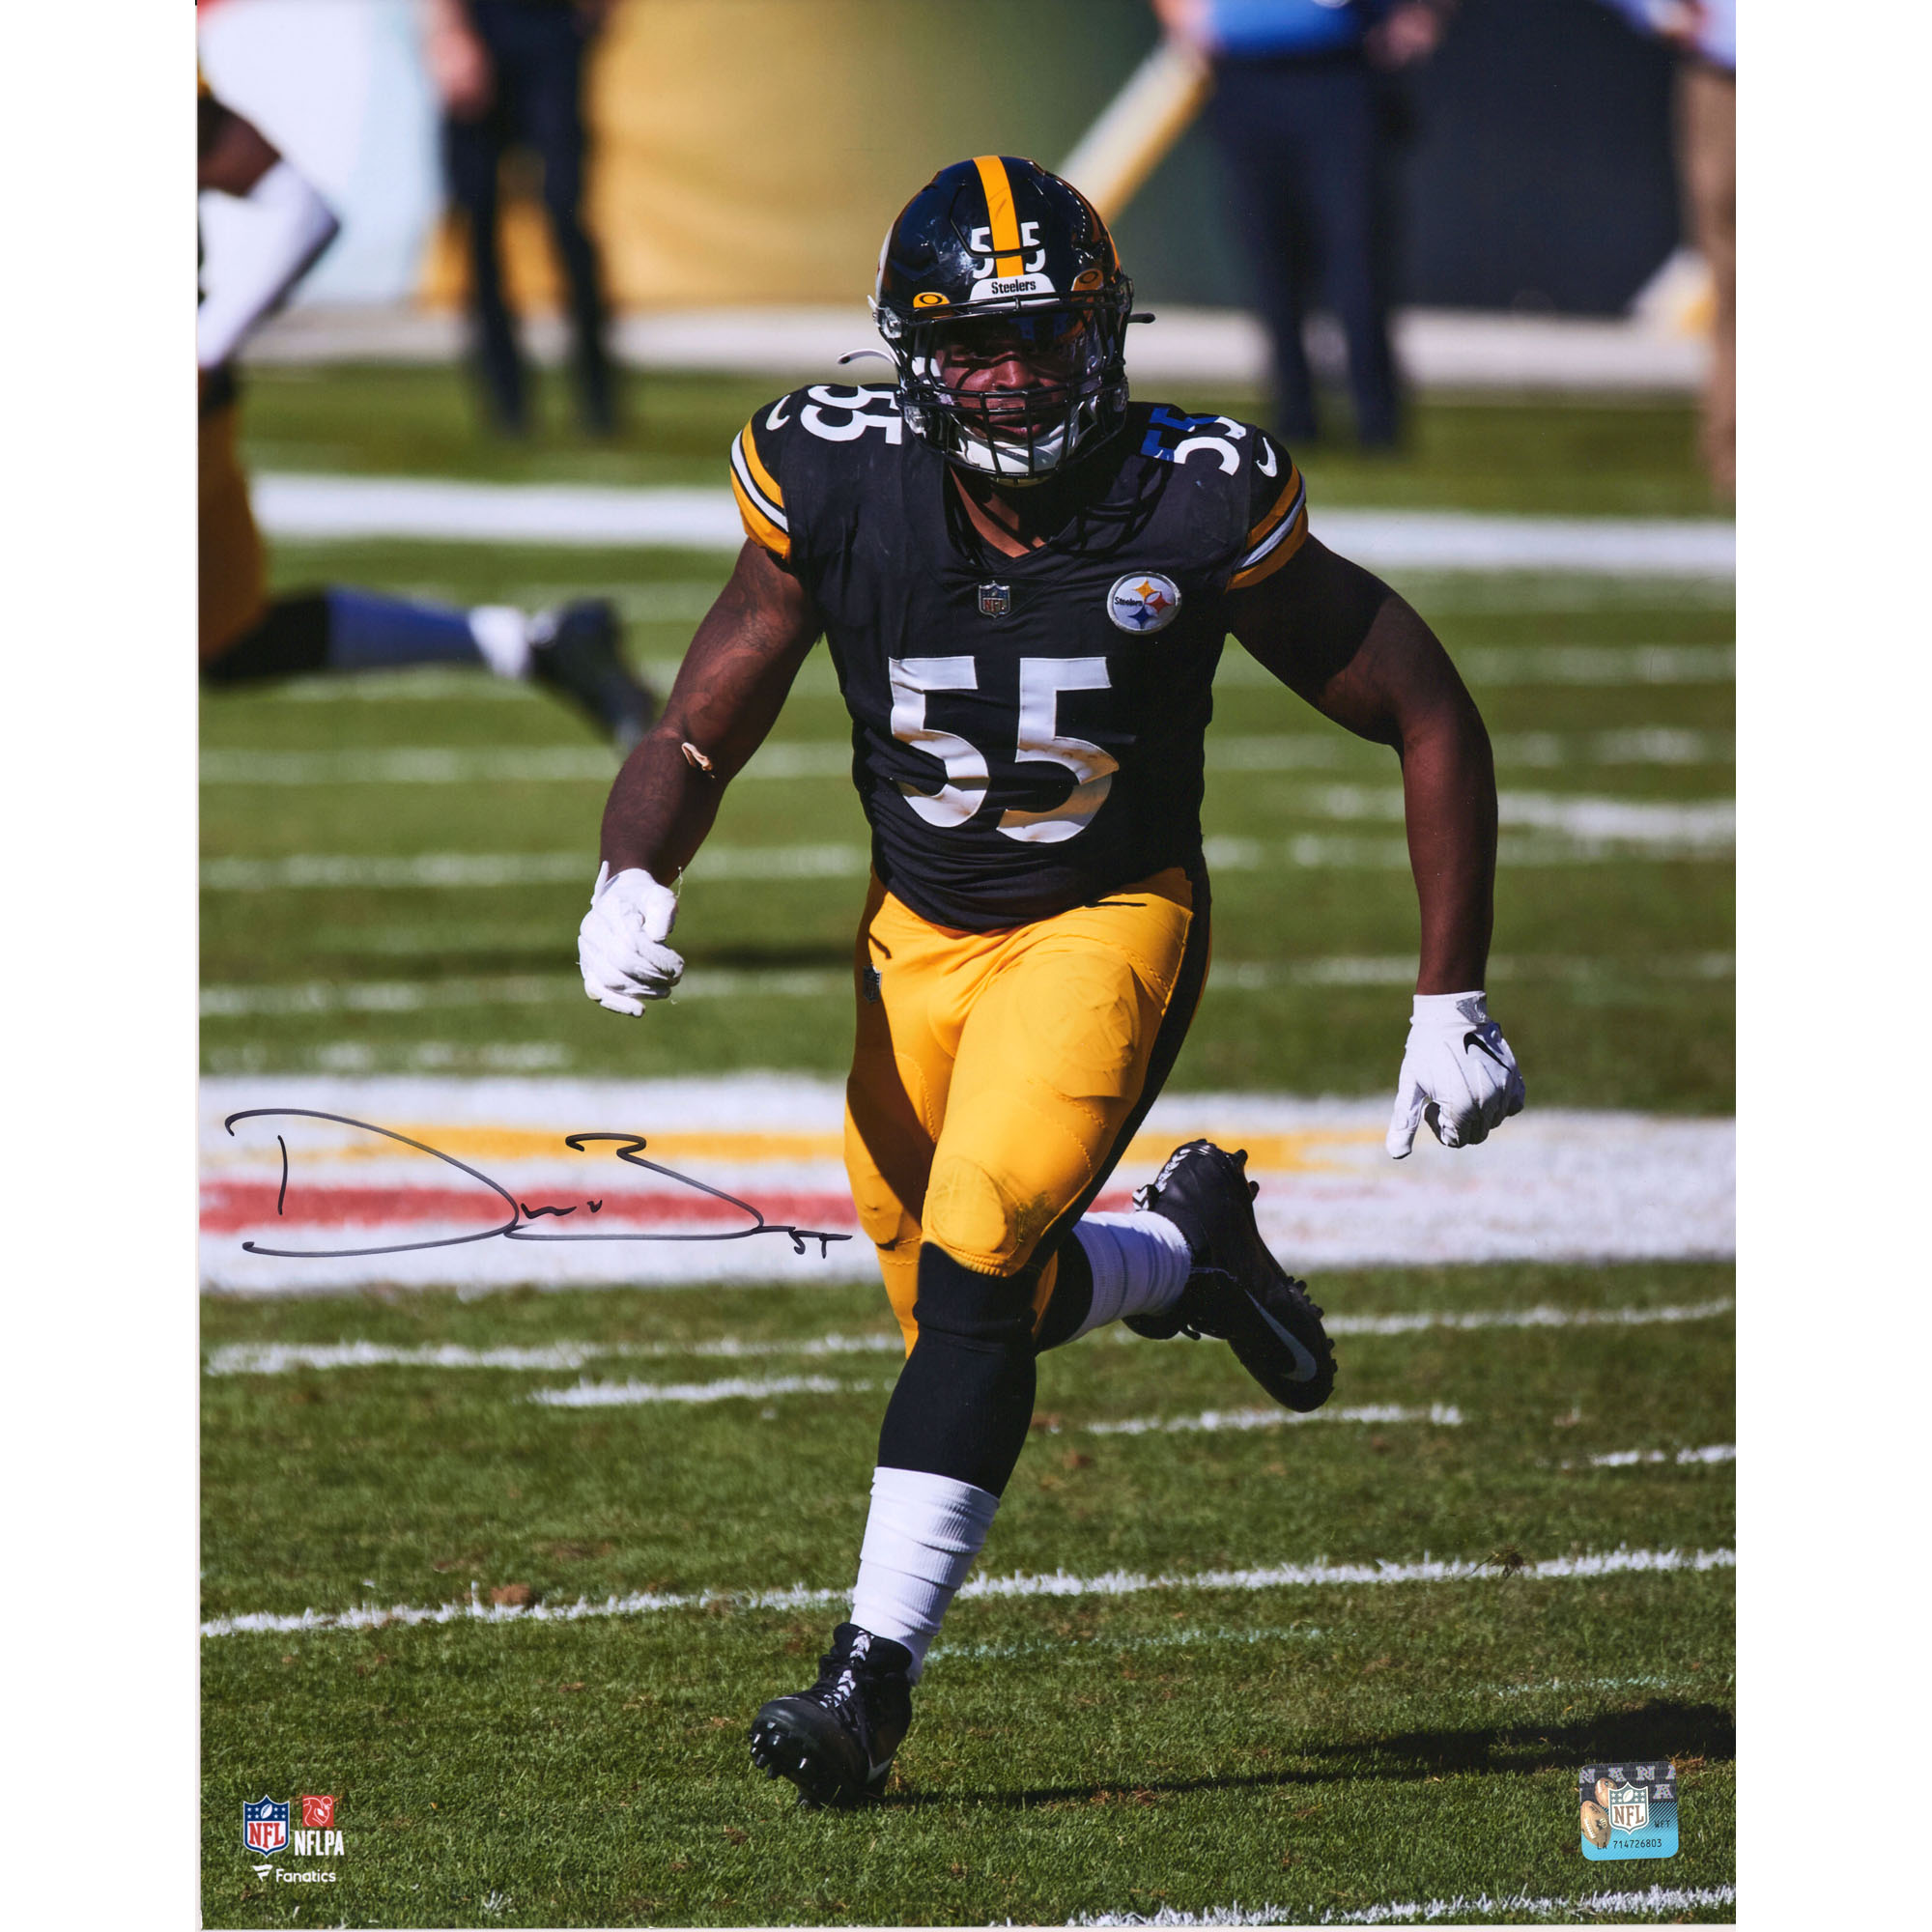 Signiertes Foto von Devin Bush (Pittsburgh Steelers), 40,6 x 50,8 cm, schwarzes Trikot, Hochformat